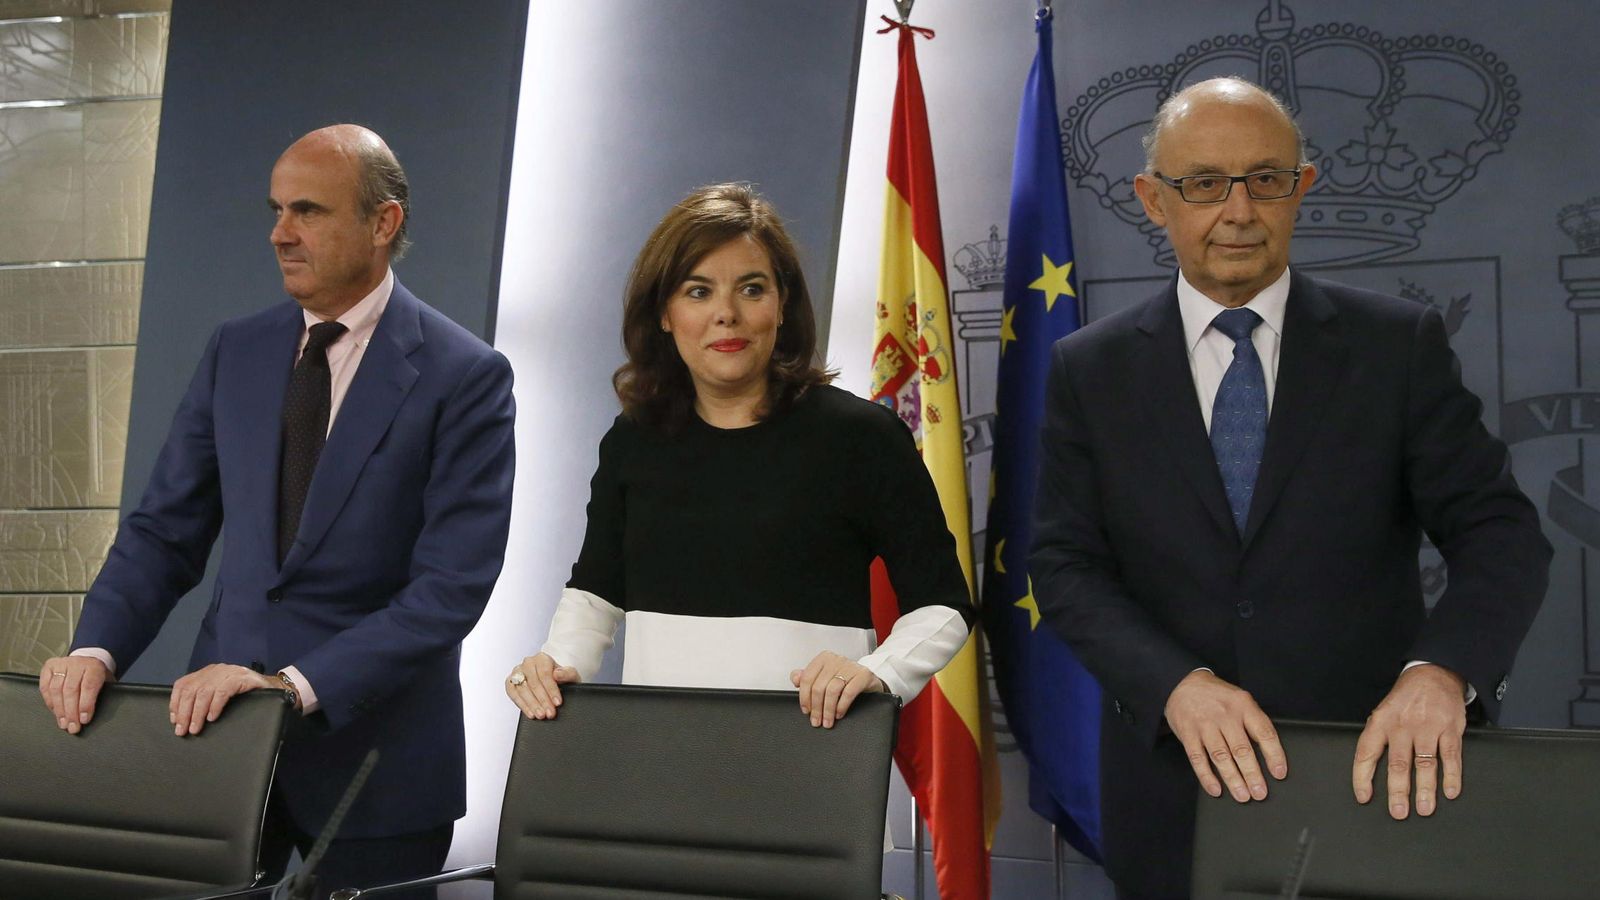 Foto: Guindos, Sáenz de Santamaría y Montoro en la rueda de prensa tras el Consejo de Ministros. (Efe)